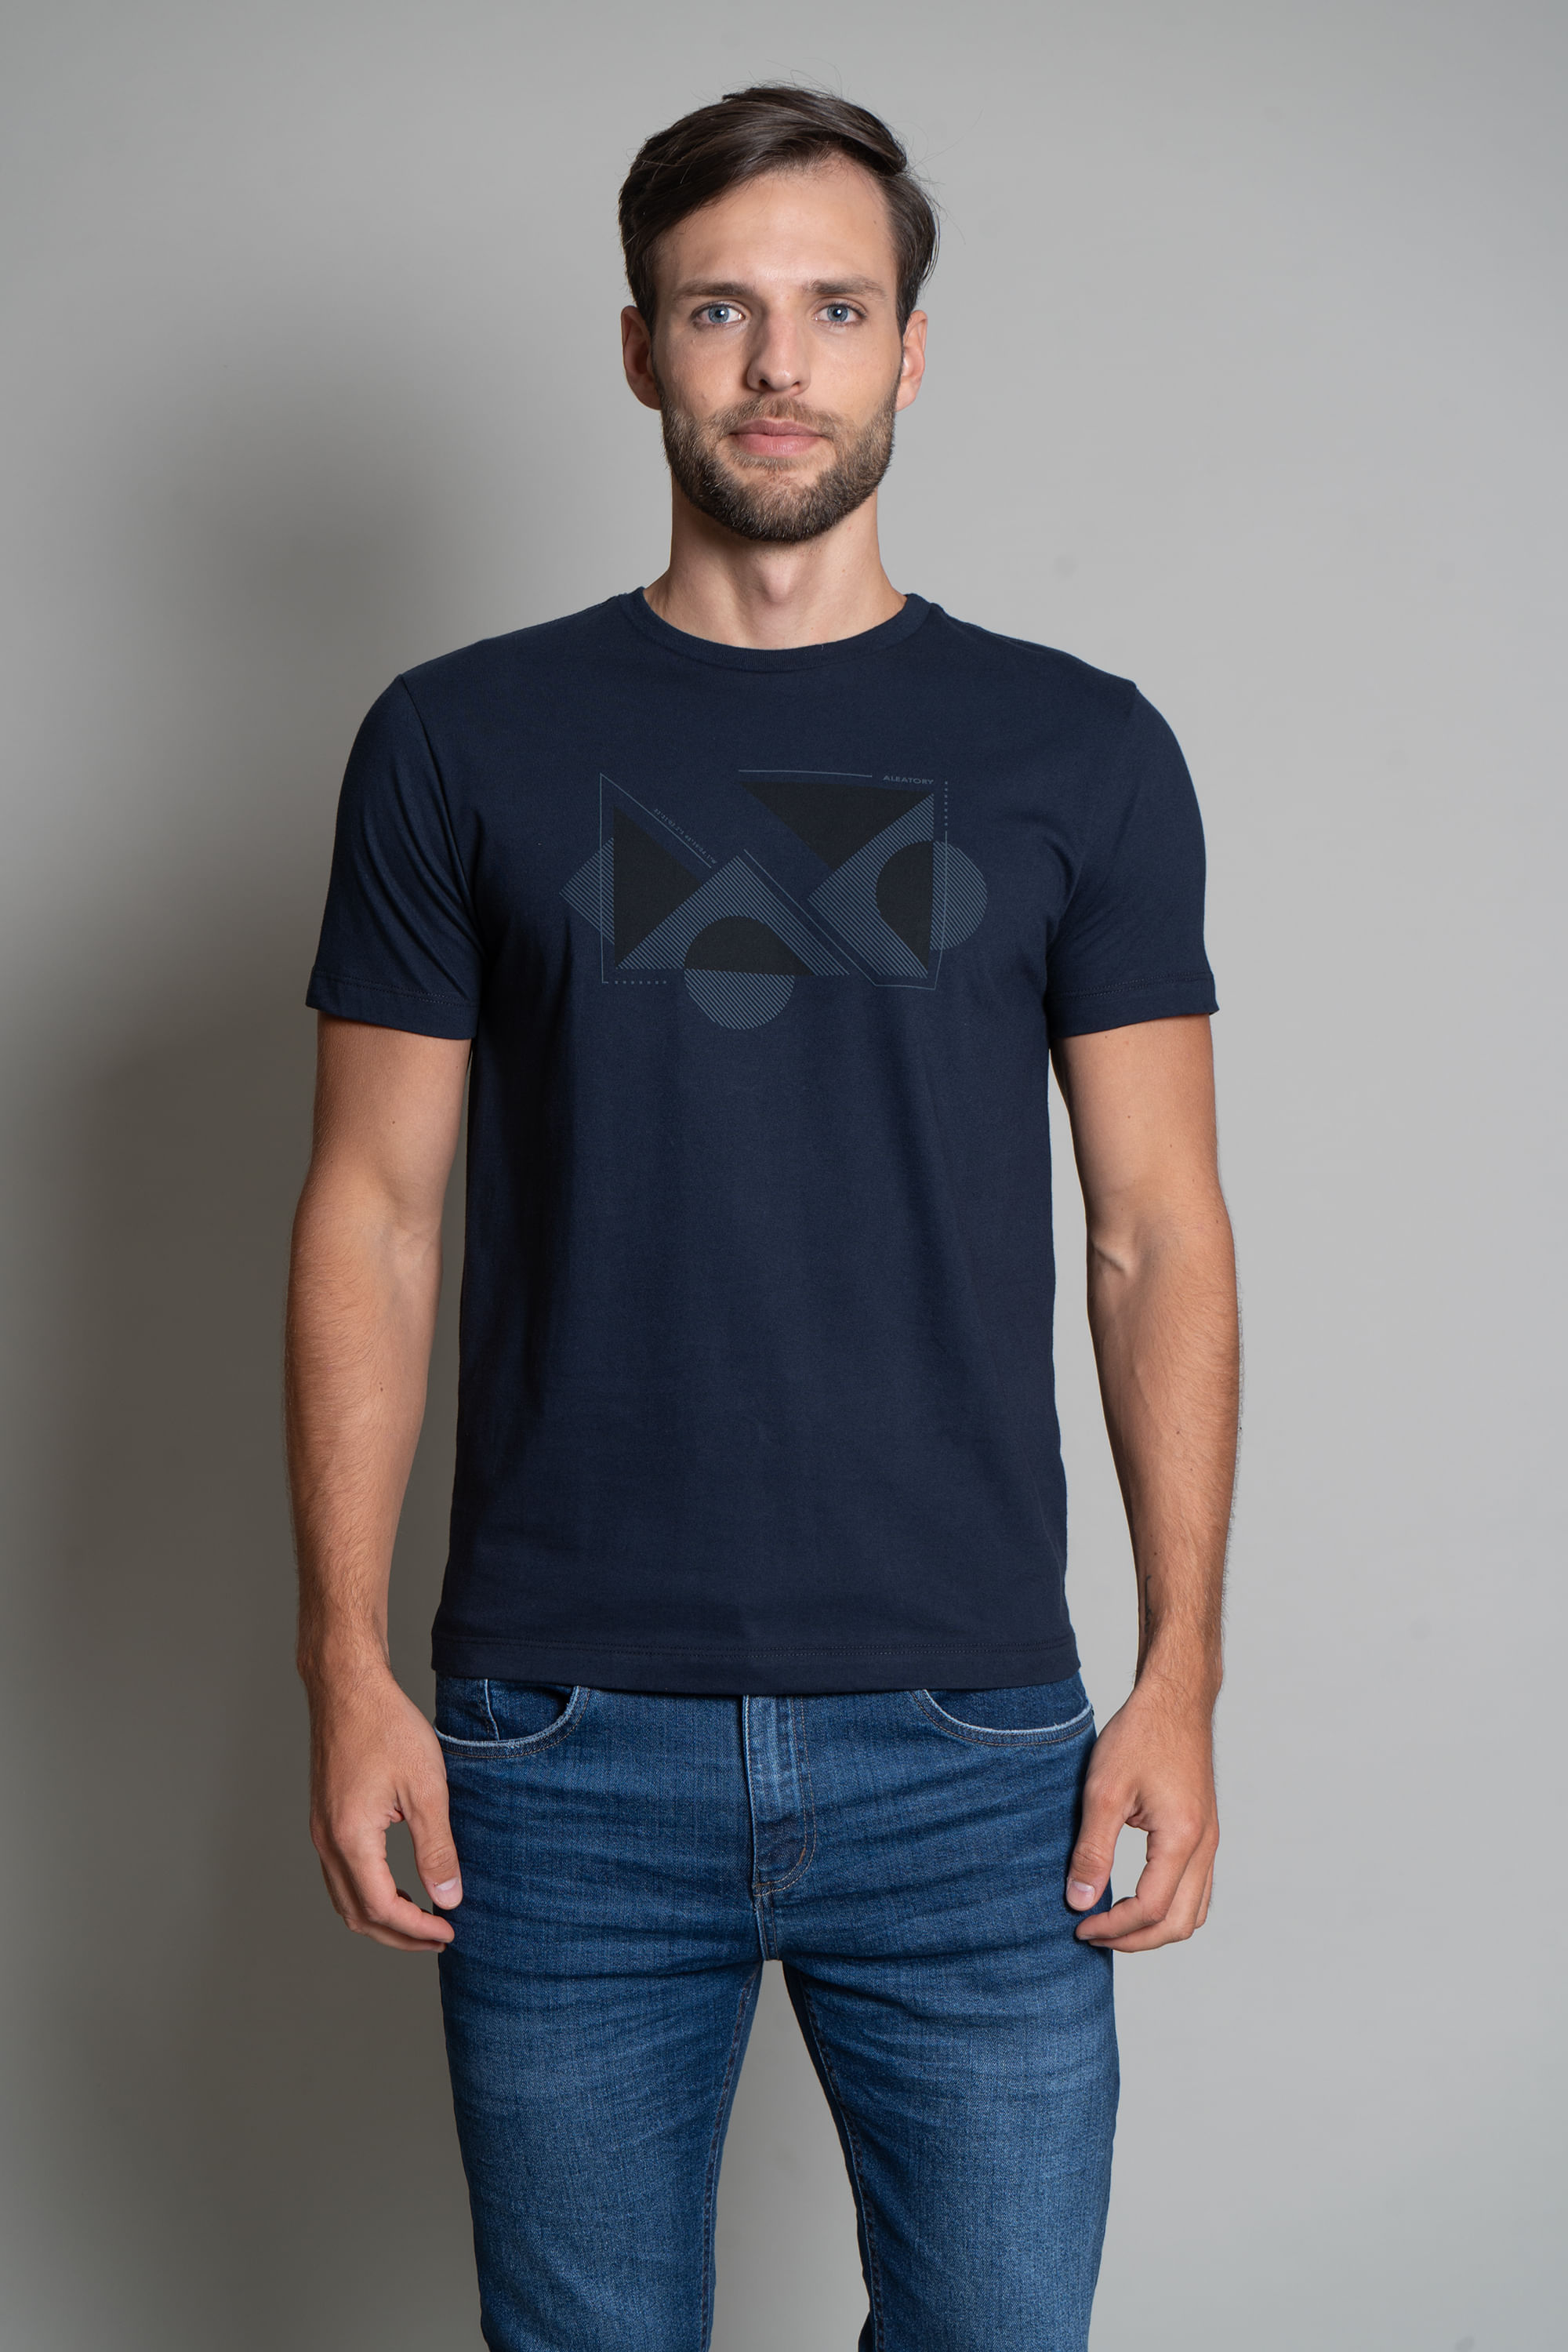 Camiseta-Signature-Estampada-Shapes-Marinho-Azul-Marinho-P